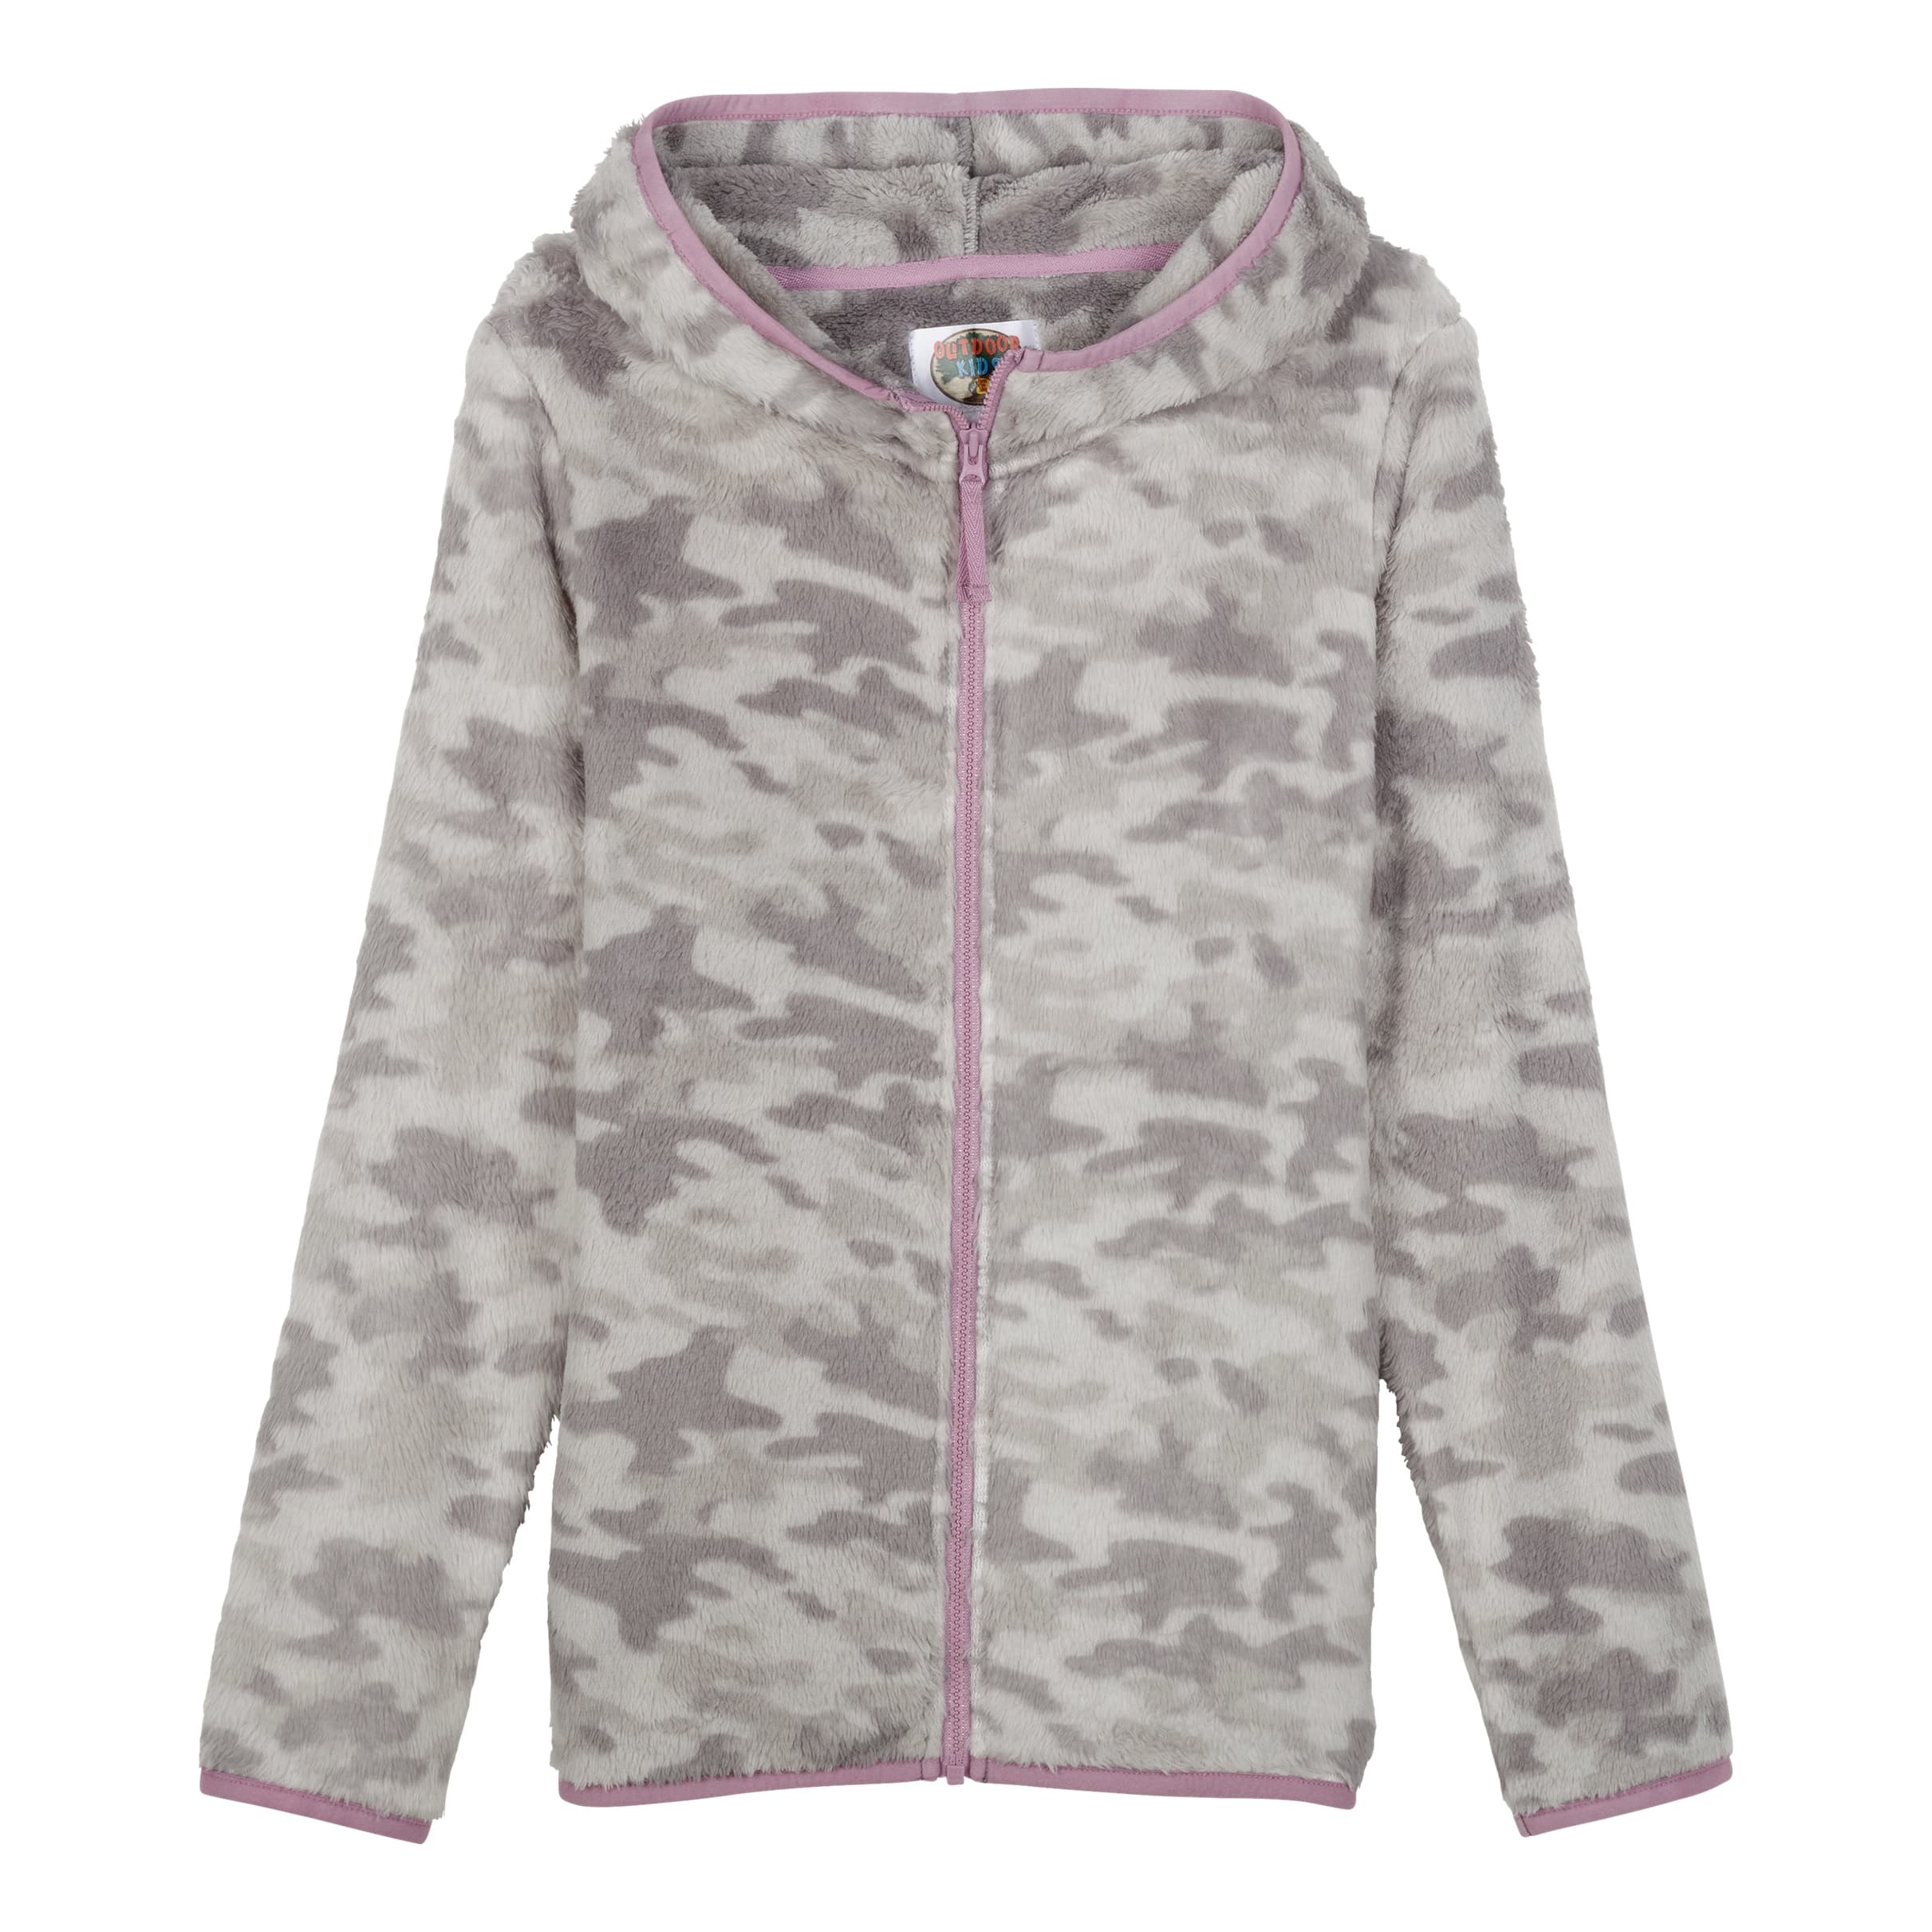 Outdoor Kids® Toddlers’ and Girls’ Cozy Fleece Full-Zip Hooded Jacket - Grey Camo